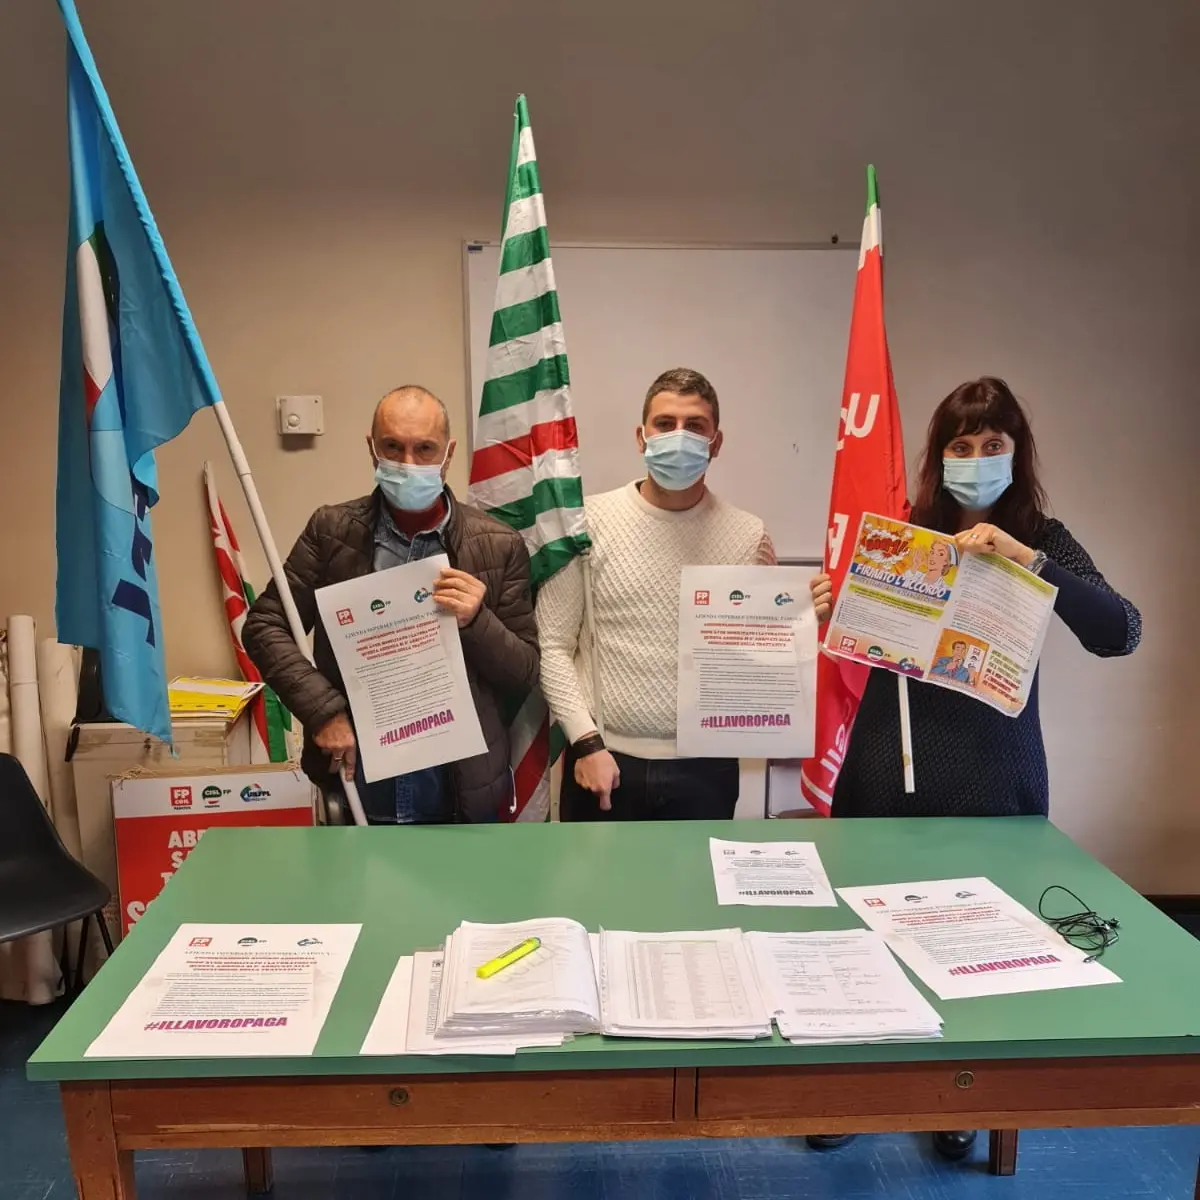 Padova, sindacati: nell'azienda ospedaliera situazione critica e lavoratori al limite. La Regione intervenga immediatamente